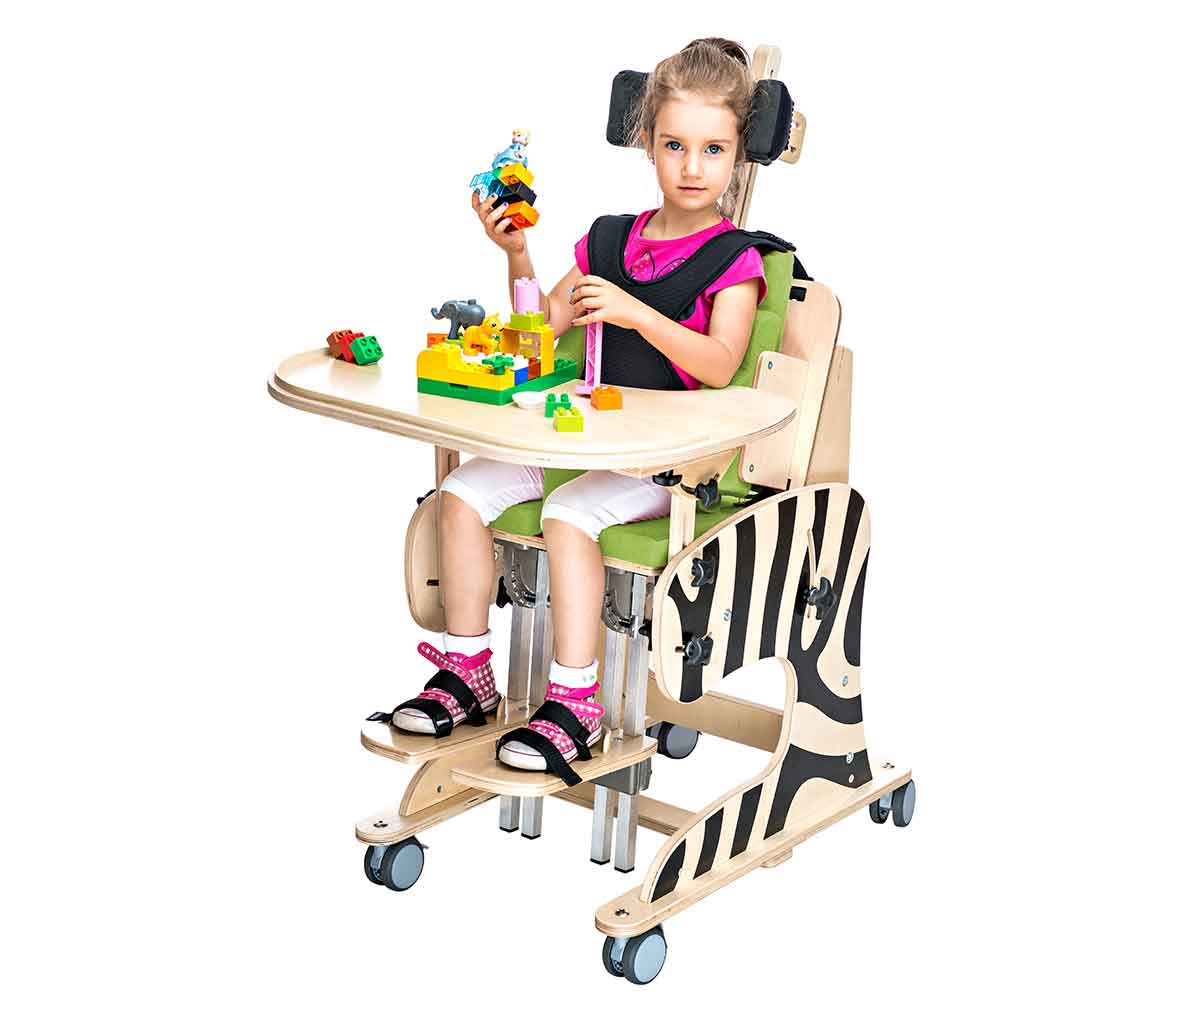 Сиденье для дцп. Реабилитационное кресло Зебра Инвенто. Реабилитационное кресло AKCESMED Зебра Инвенто. Вертикализатор - кресло для детей с ДЦП. Стул вертикализатор для детей ДЦП.